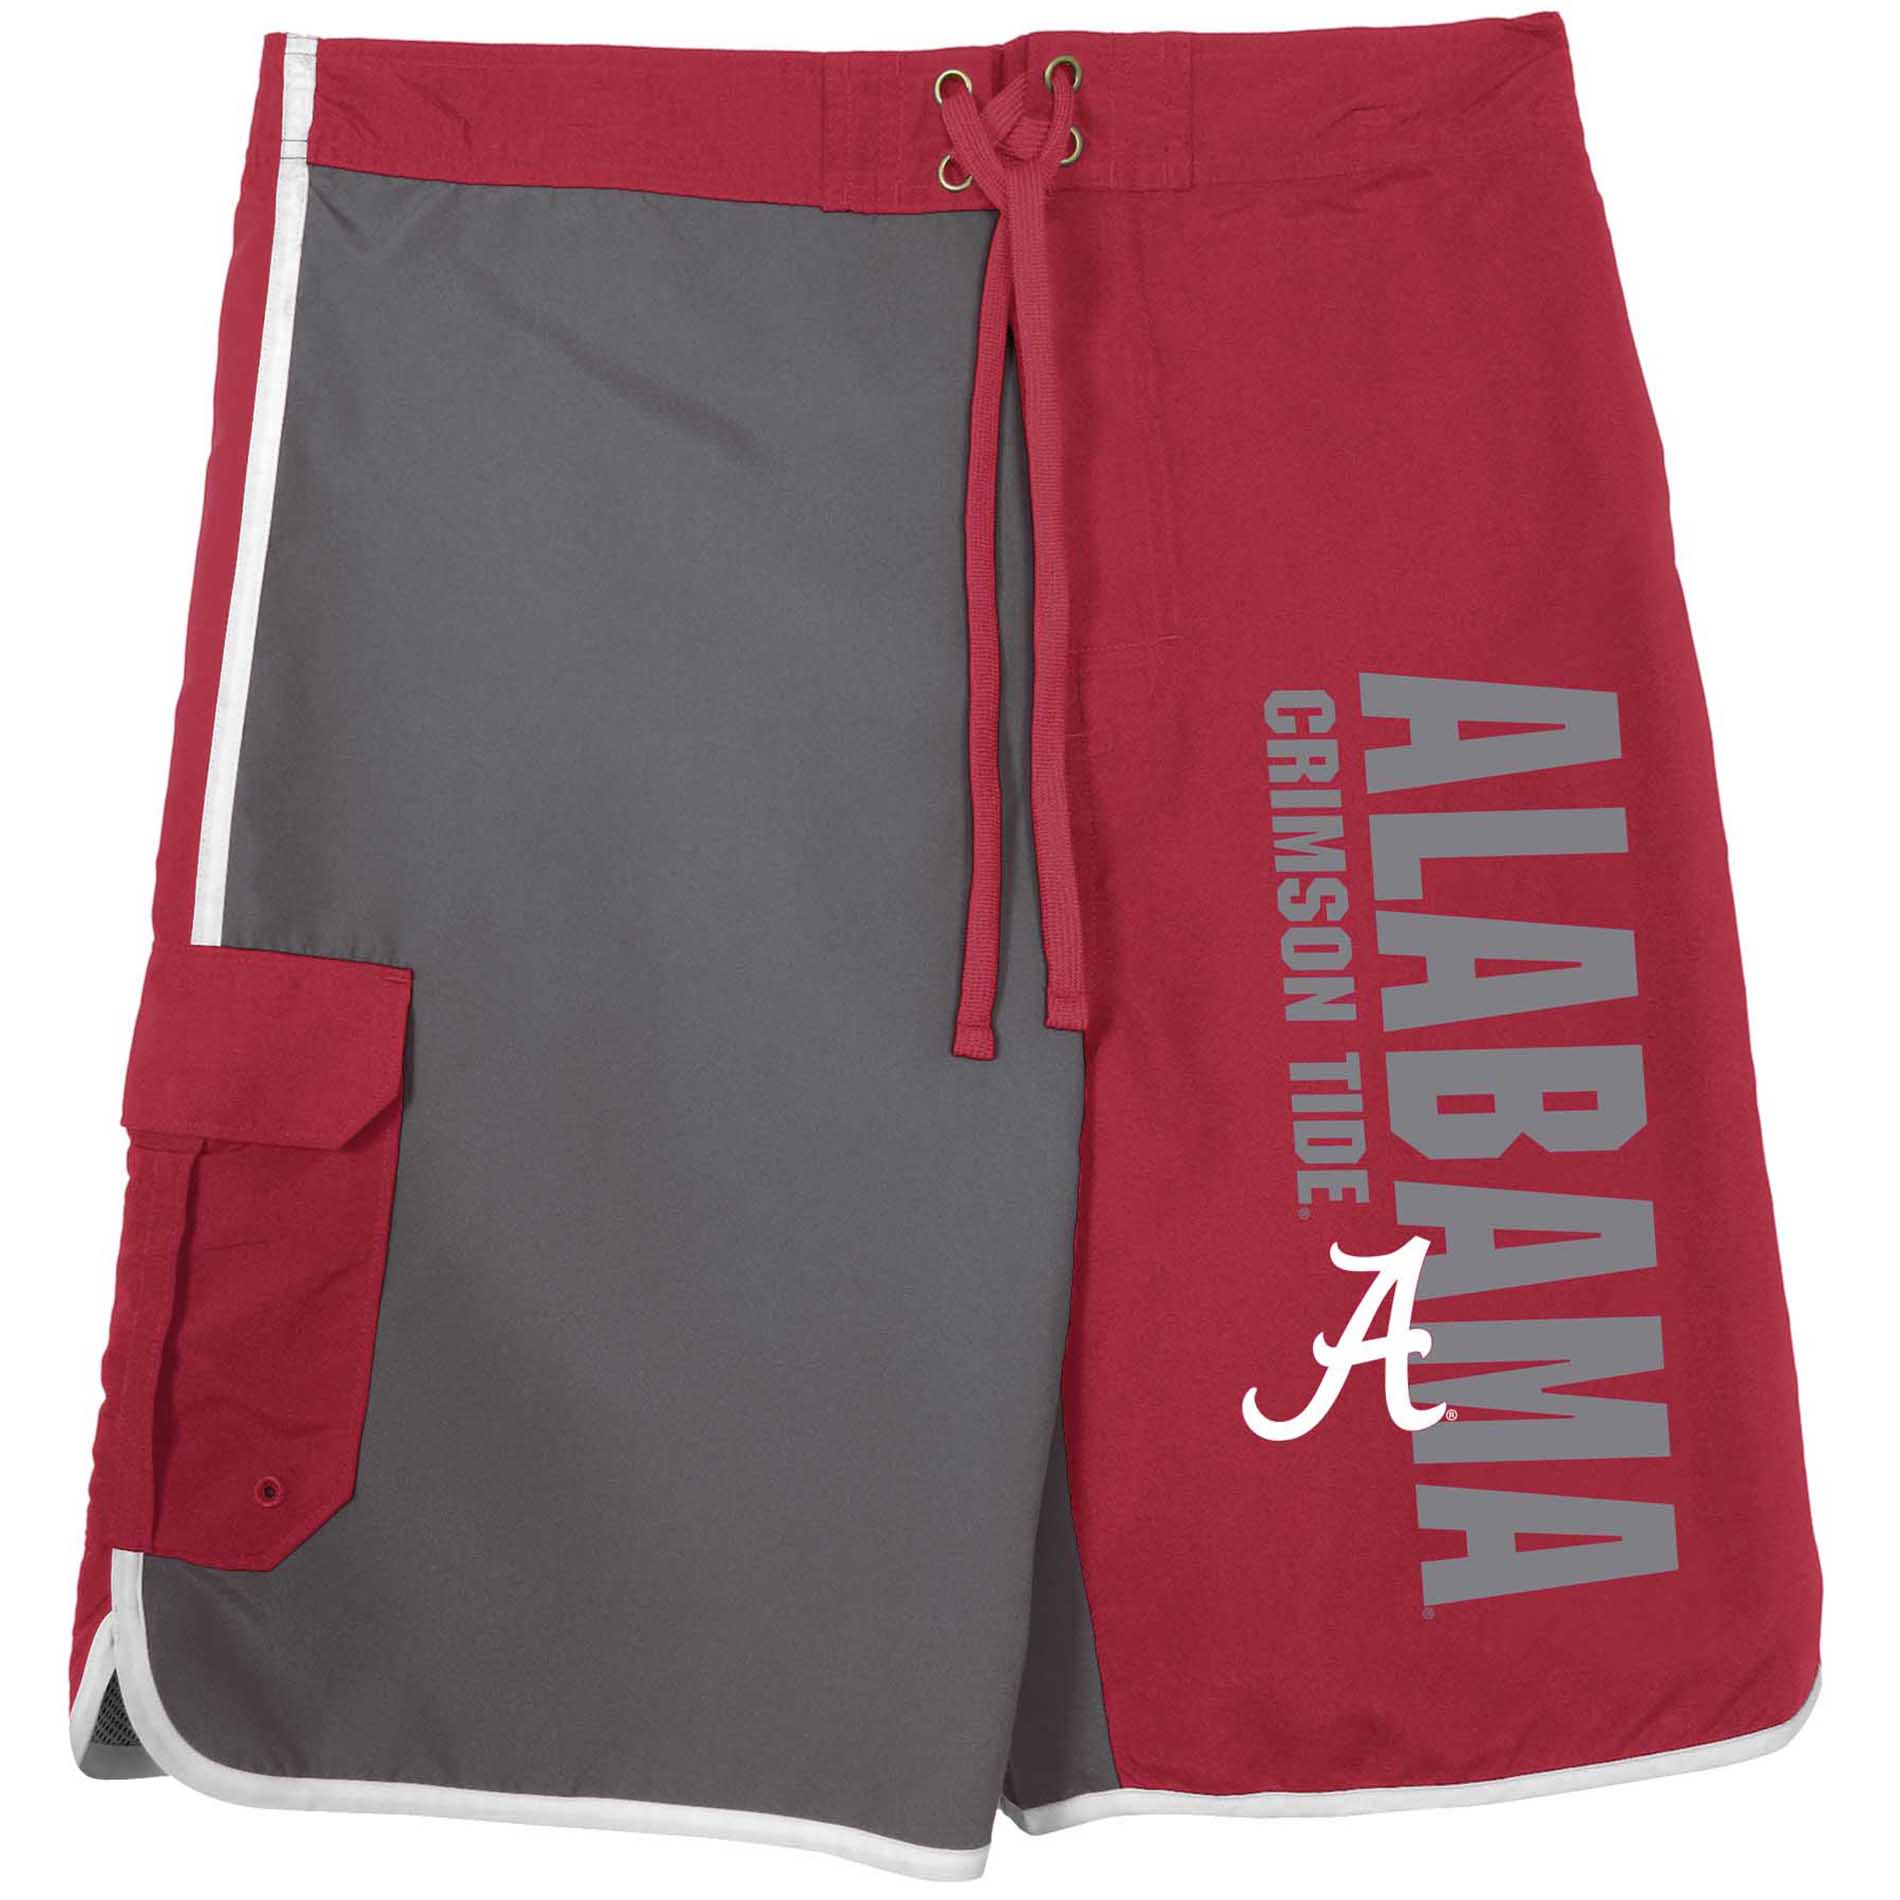 NCAA Men's Alabama Crimson Tide Board Shorts